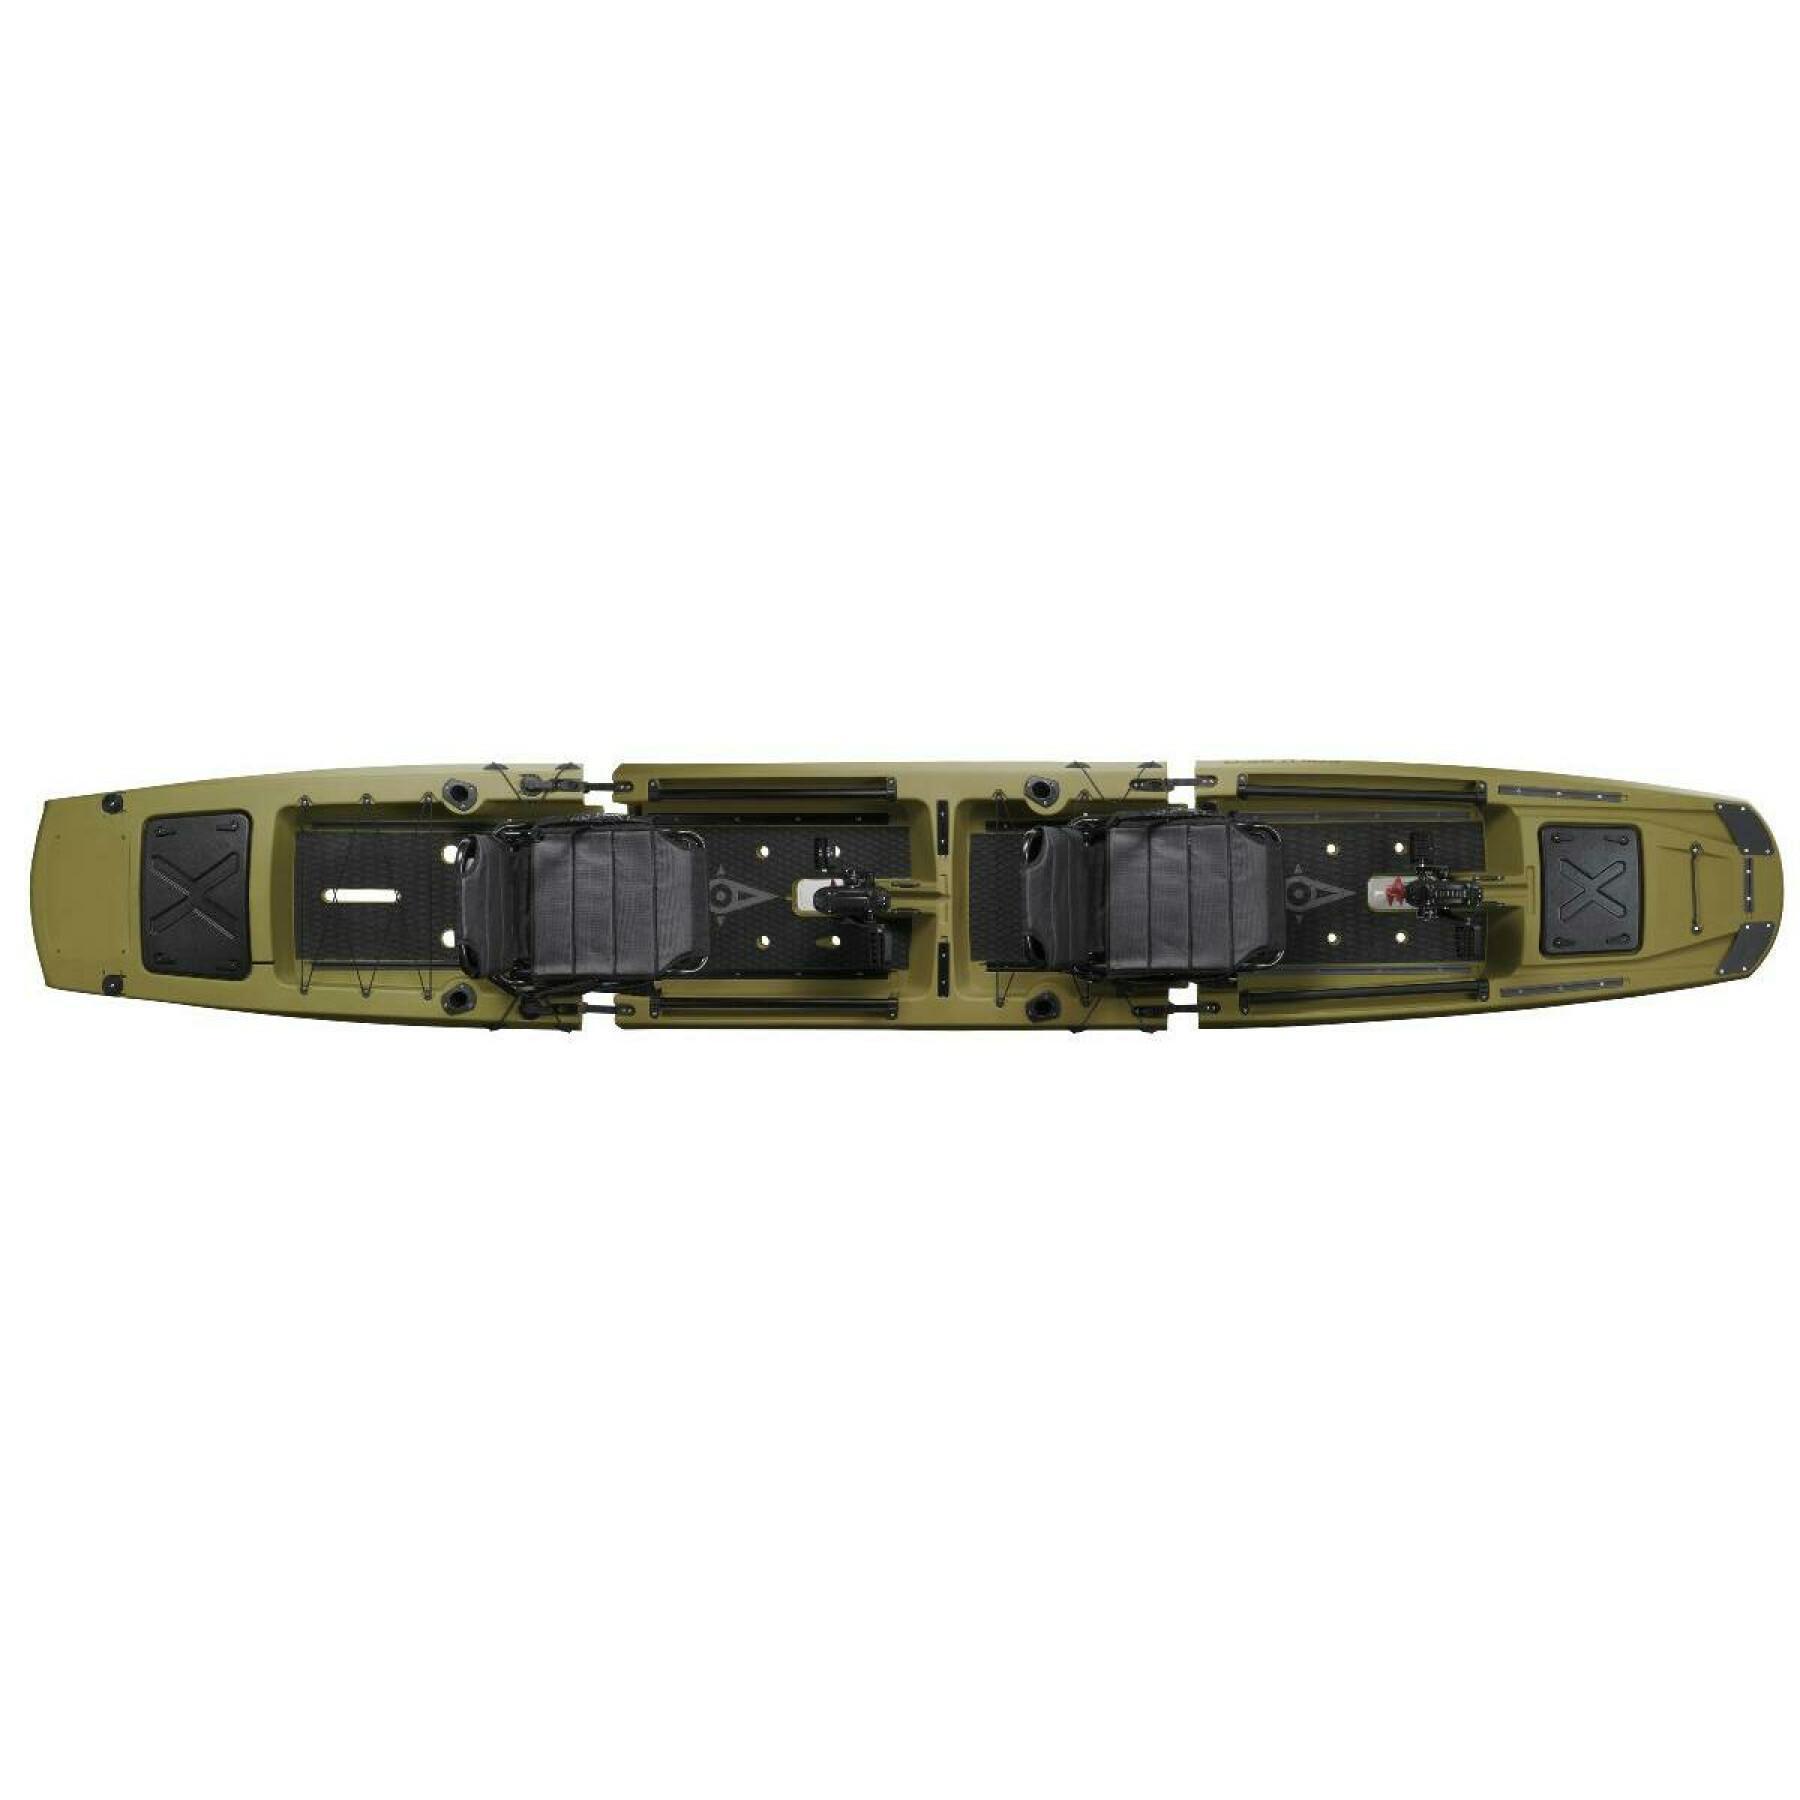 Modular two-seater fishing kayak Point 65°N kingfisher duo